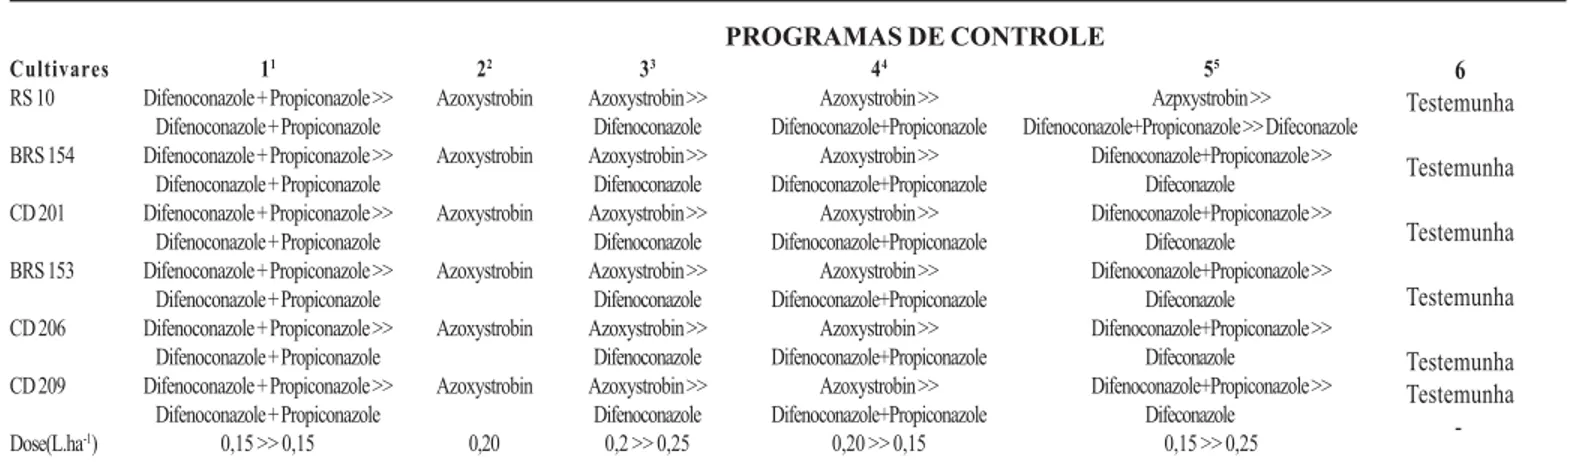 Tabela 1 – Programas de controle e doses aplicadas em cultivares de soja para controle de ferrugem asiática